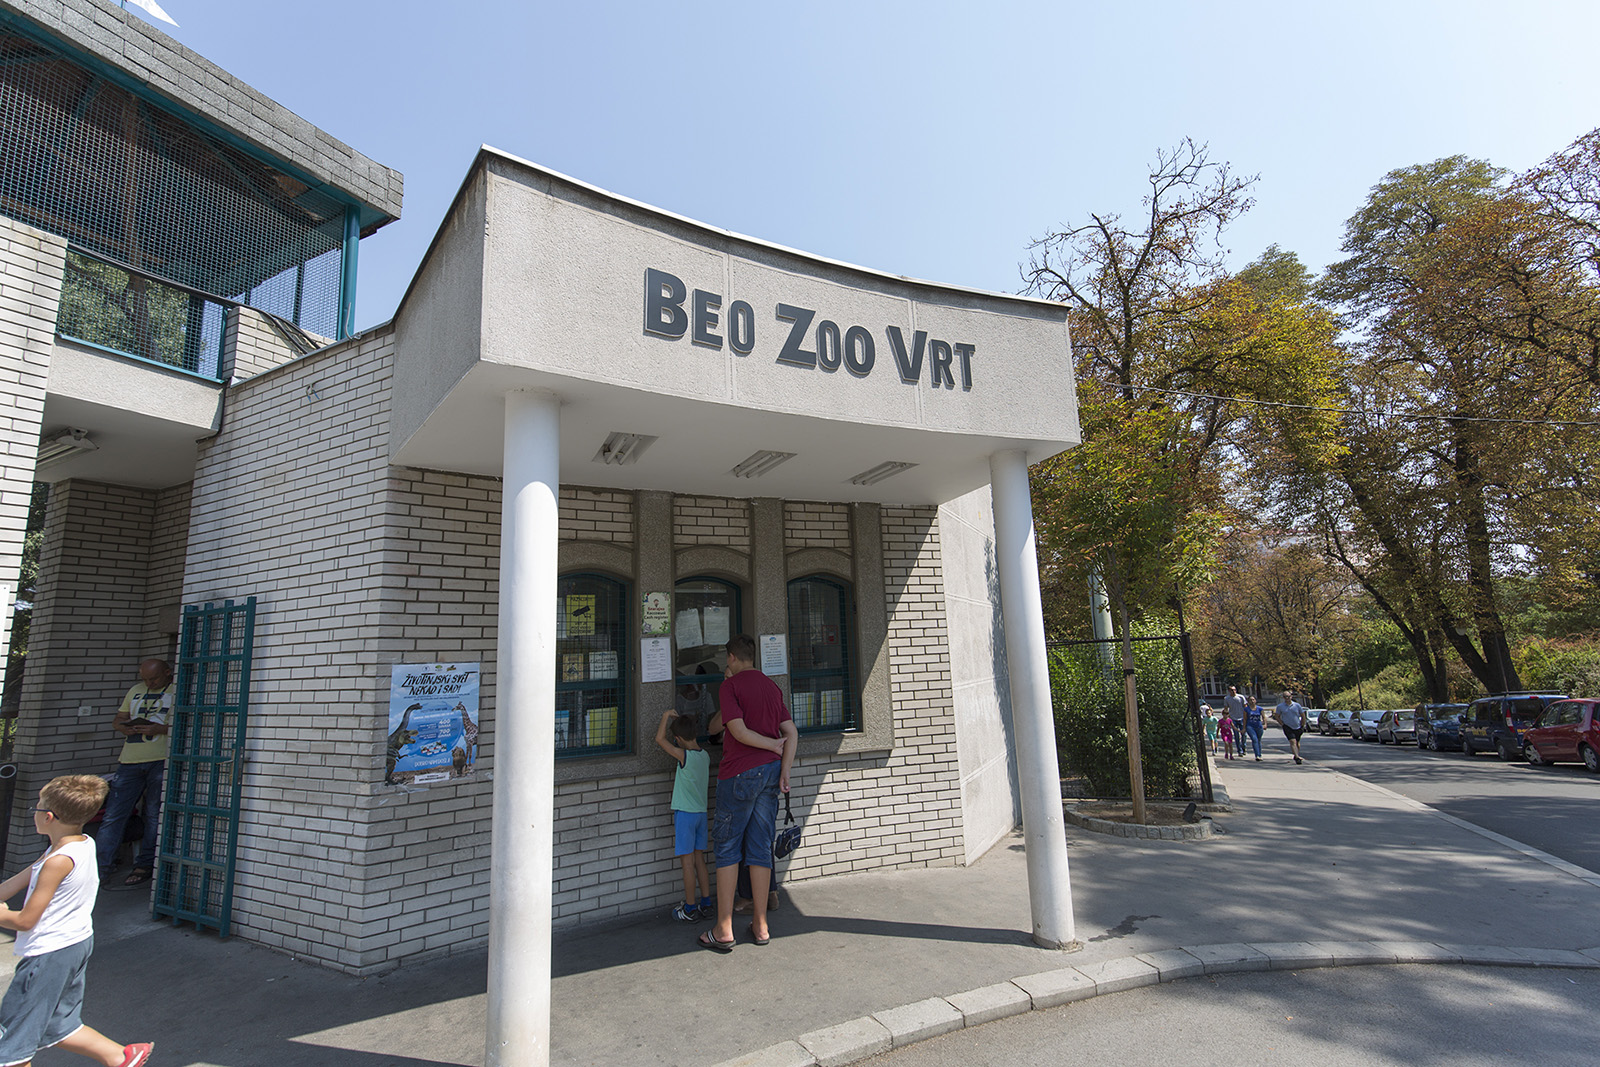 Beo zoo vrt